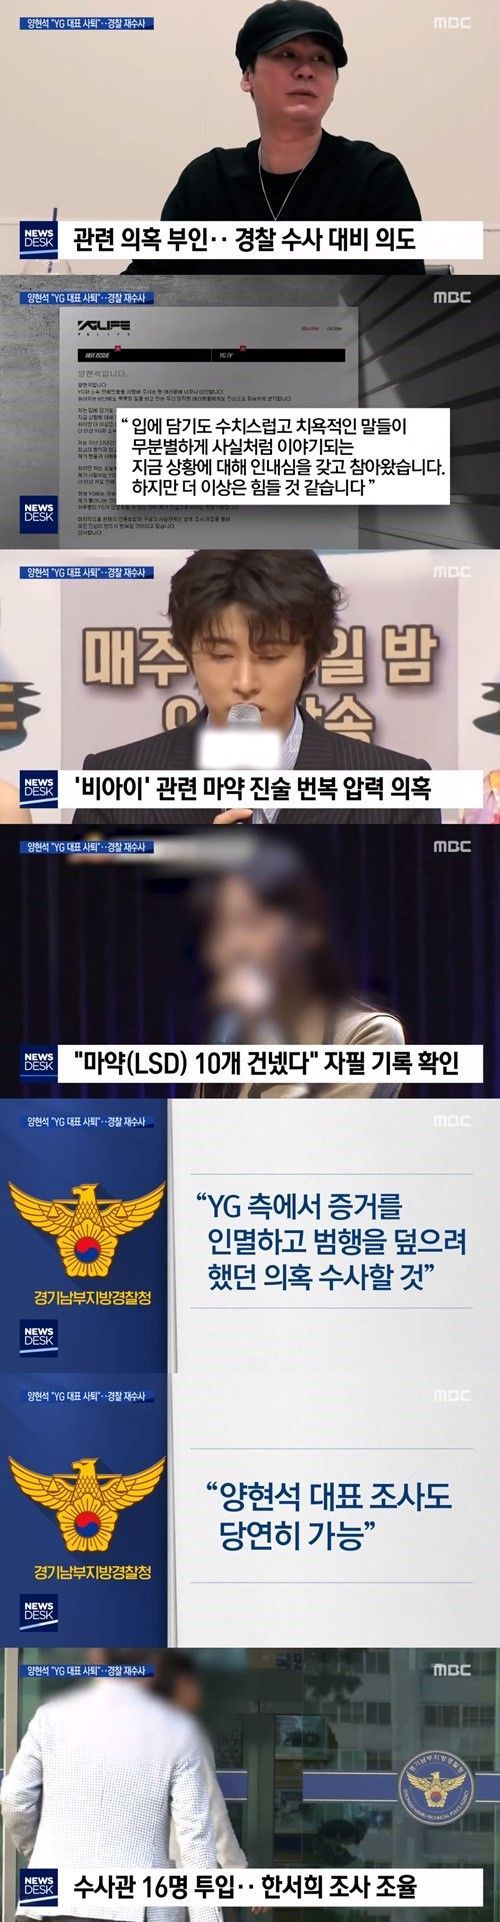 MBC '뉴스데스크'는 지난 2016년 비아이에 대한 마약 수사에 개입해 사건을 무마시켰다는 의혹을 받는 양 전 대표에 대해 경찰이 전담팀을 꾸려 수사한다고 보도했다/사진=MBC '뉴스데스크' 화면 캡처